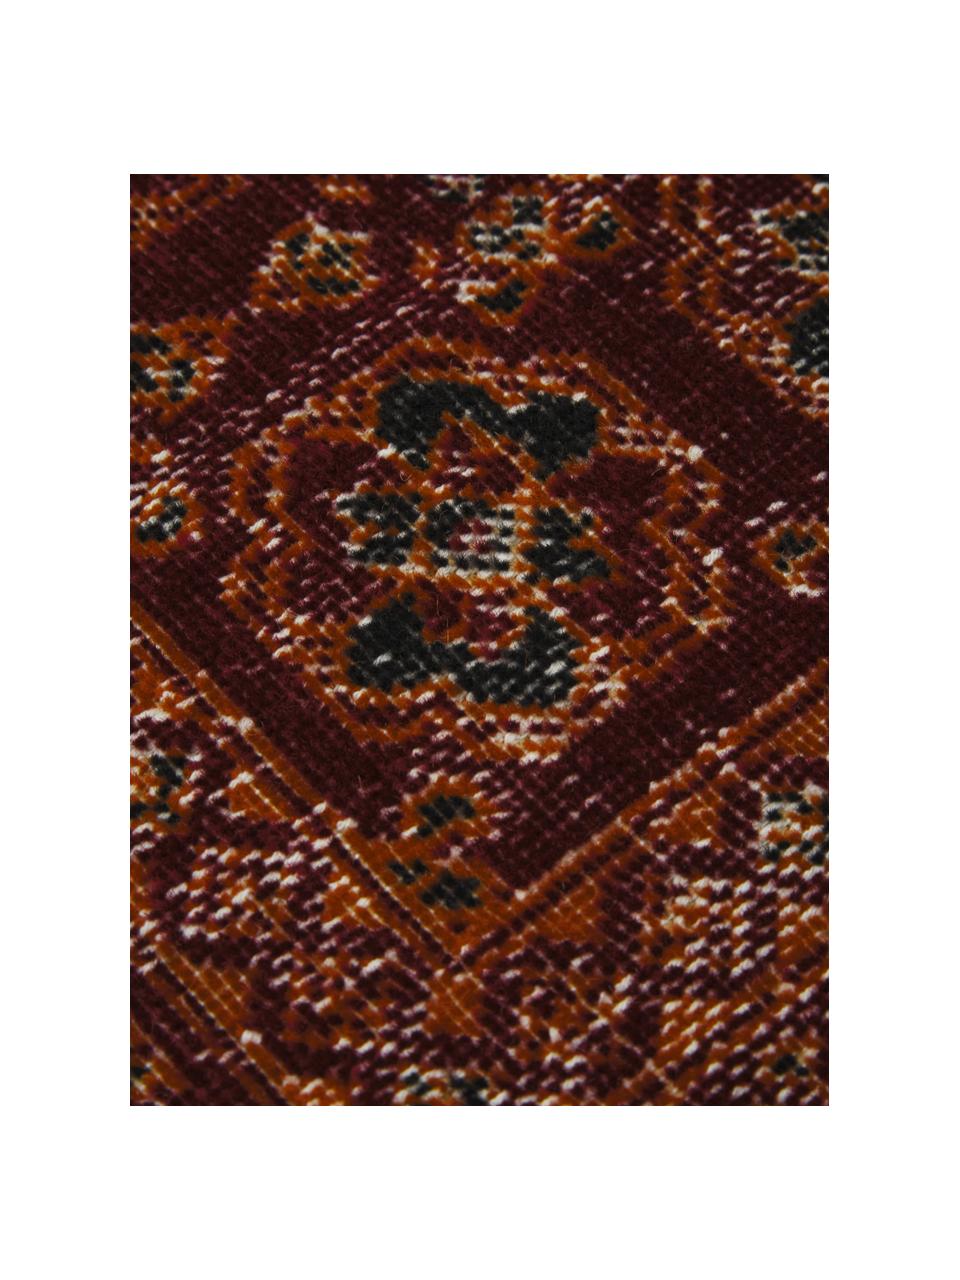 In- & Outdoor-Teppich Tilas in Rot/Orange, Orient Style, 100% Polypropylen, Rot, Orange, Anthrazit, B 80 x L 150 cm (Größe XS)